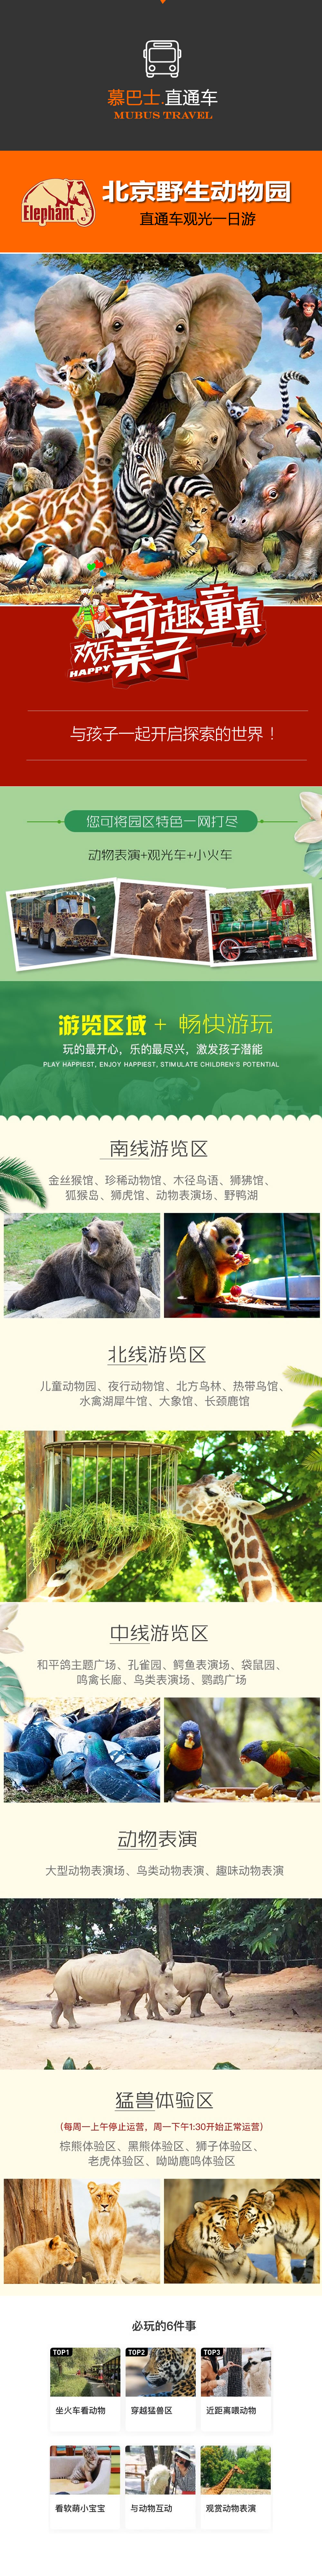 北京野生动物园1